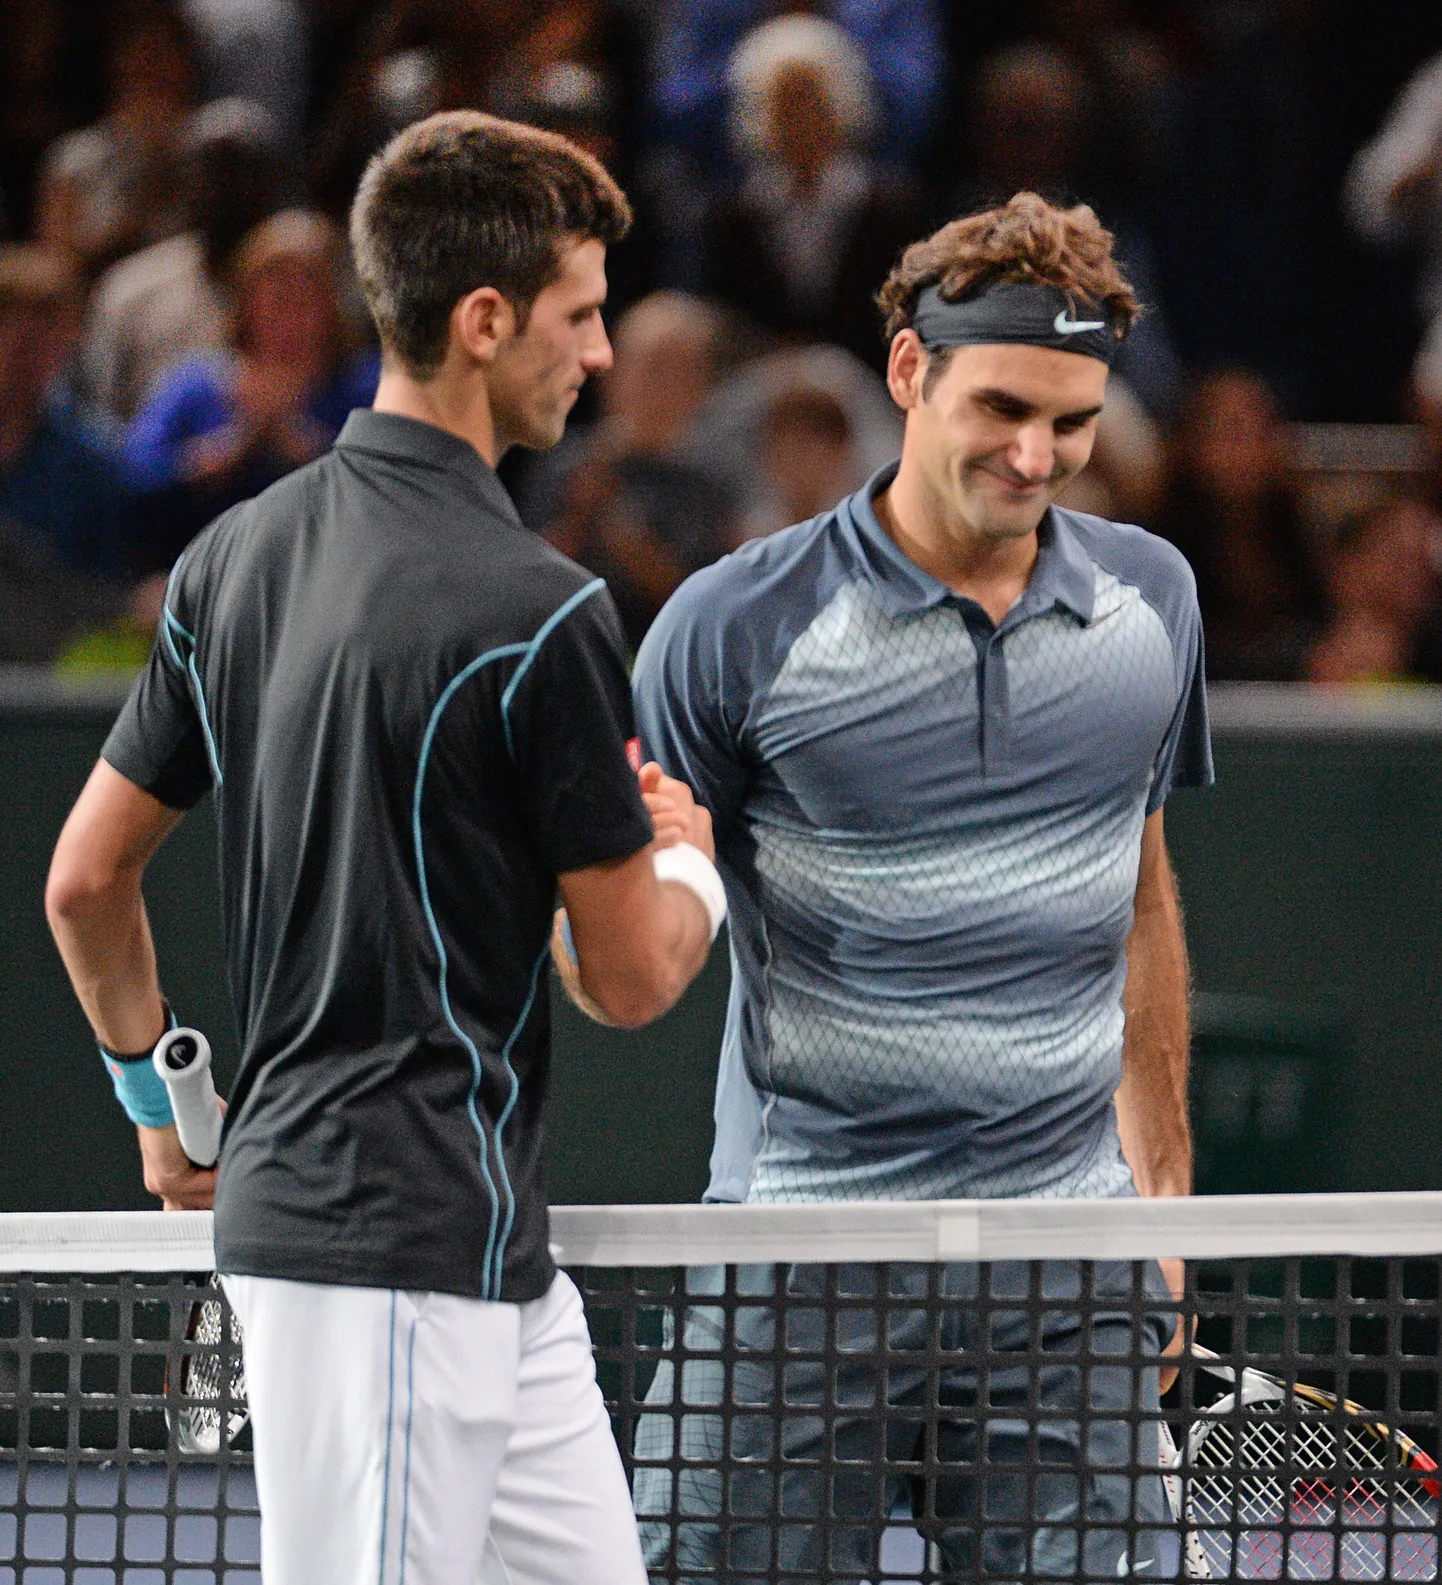 Pariisi turniiri poolfinaalis kohtunud Novak Djokovic (vasakul) ja Roger Federer lähevad aastalõputurniiril taas alagrupis vastamisi.